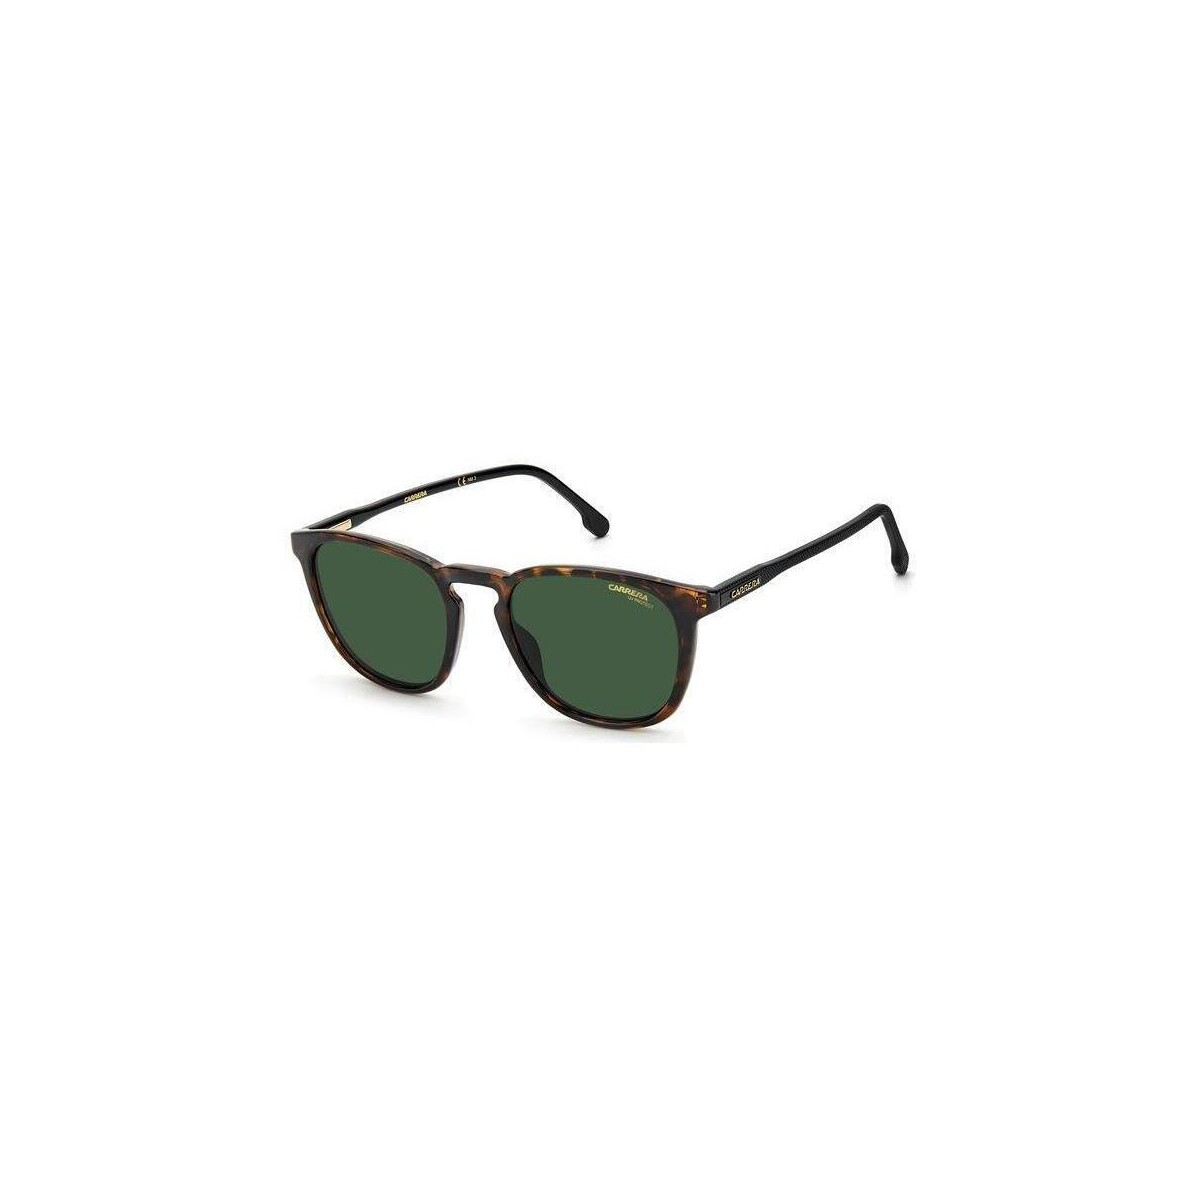 Orologi & Gioielli Uomo Occhiali da sole Carrera 260/S Occhiali da sole, Havana/Verde, 51 mm Altri